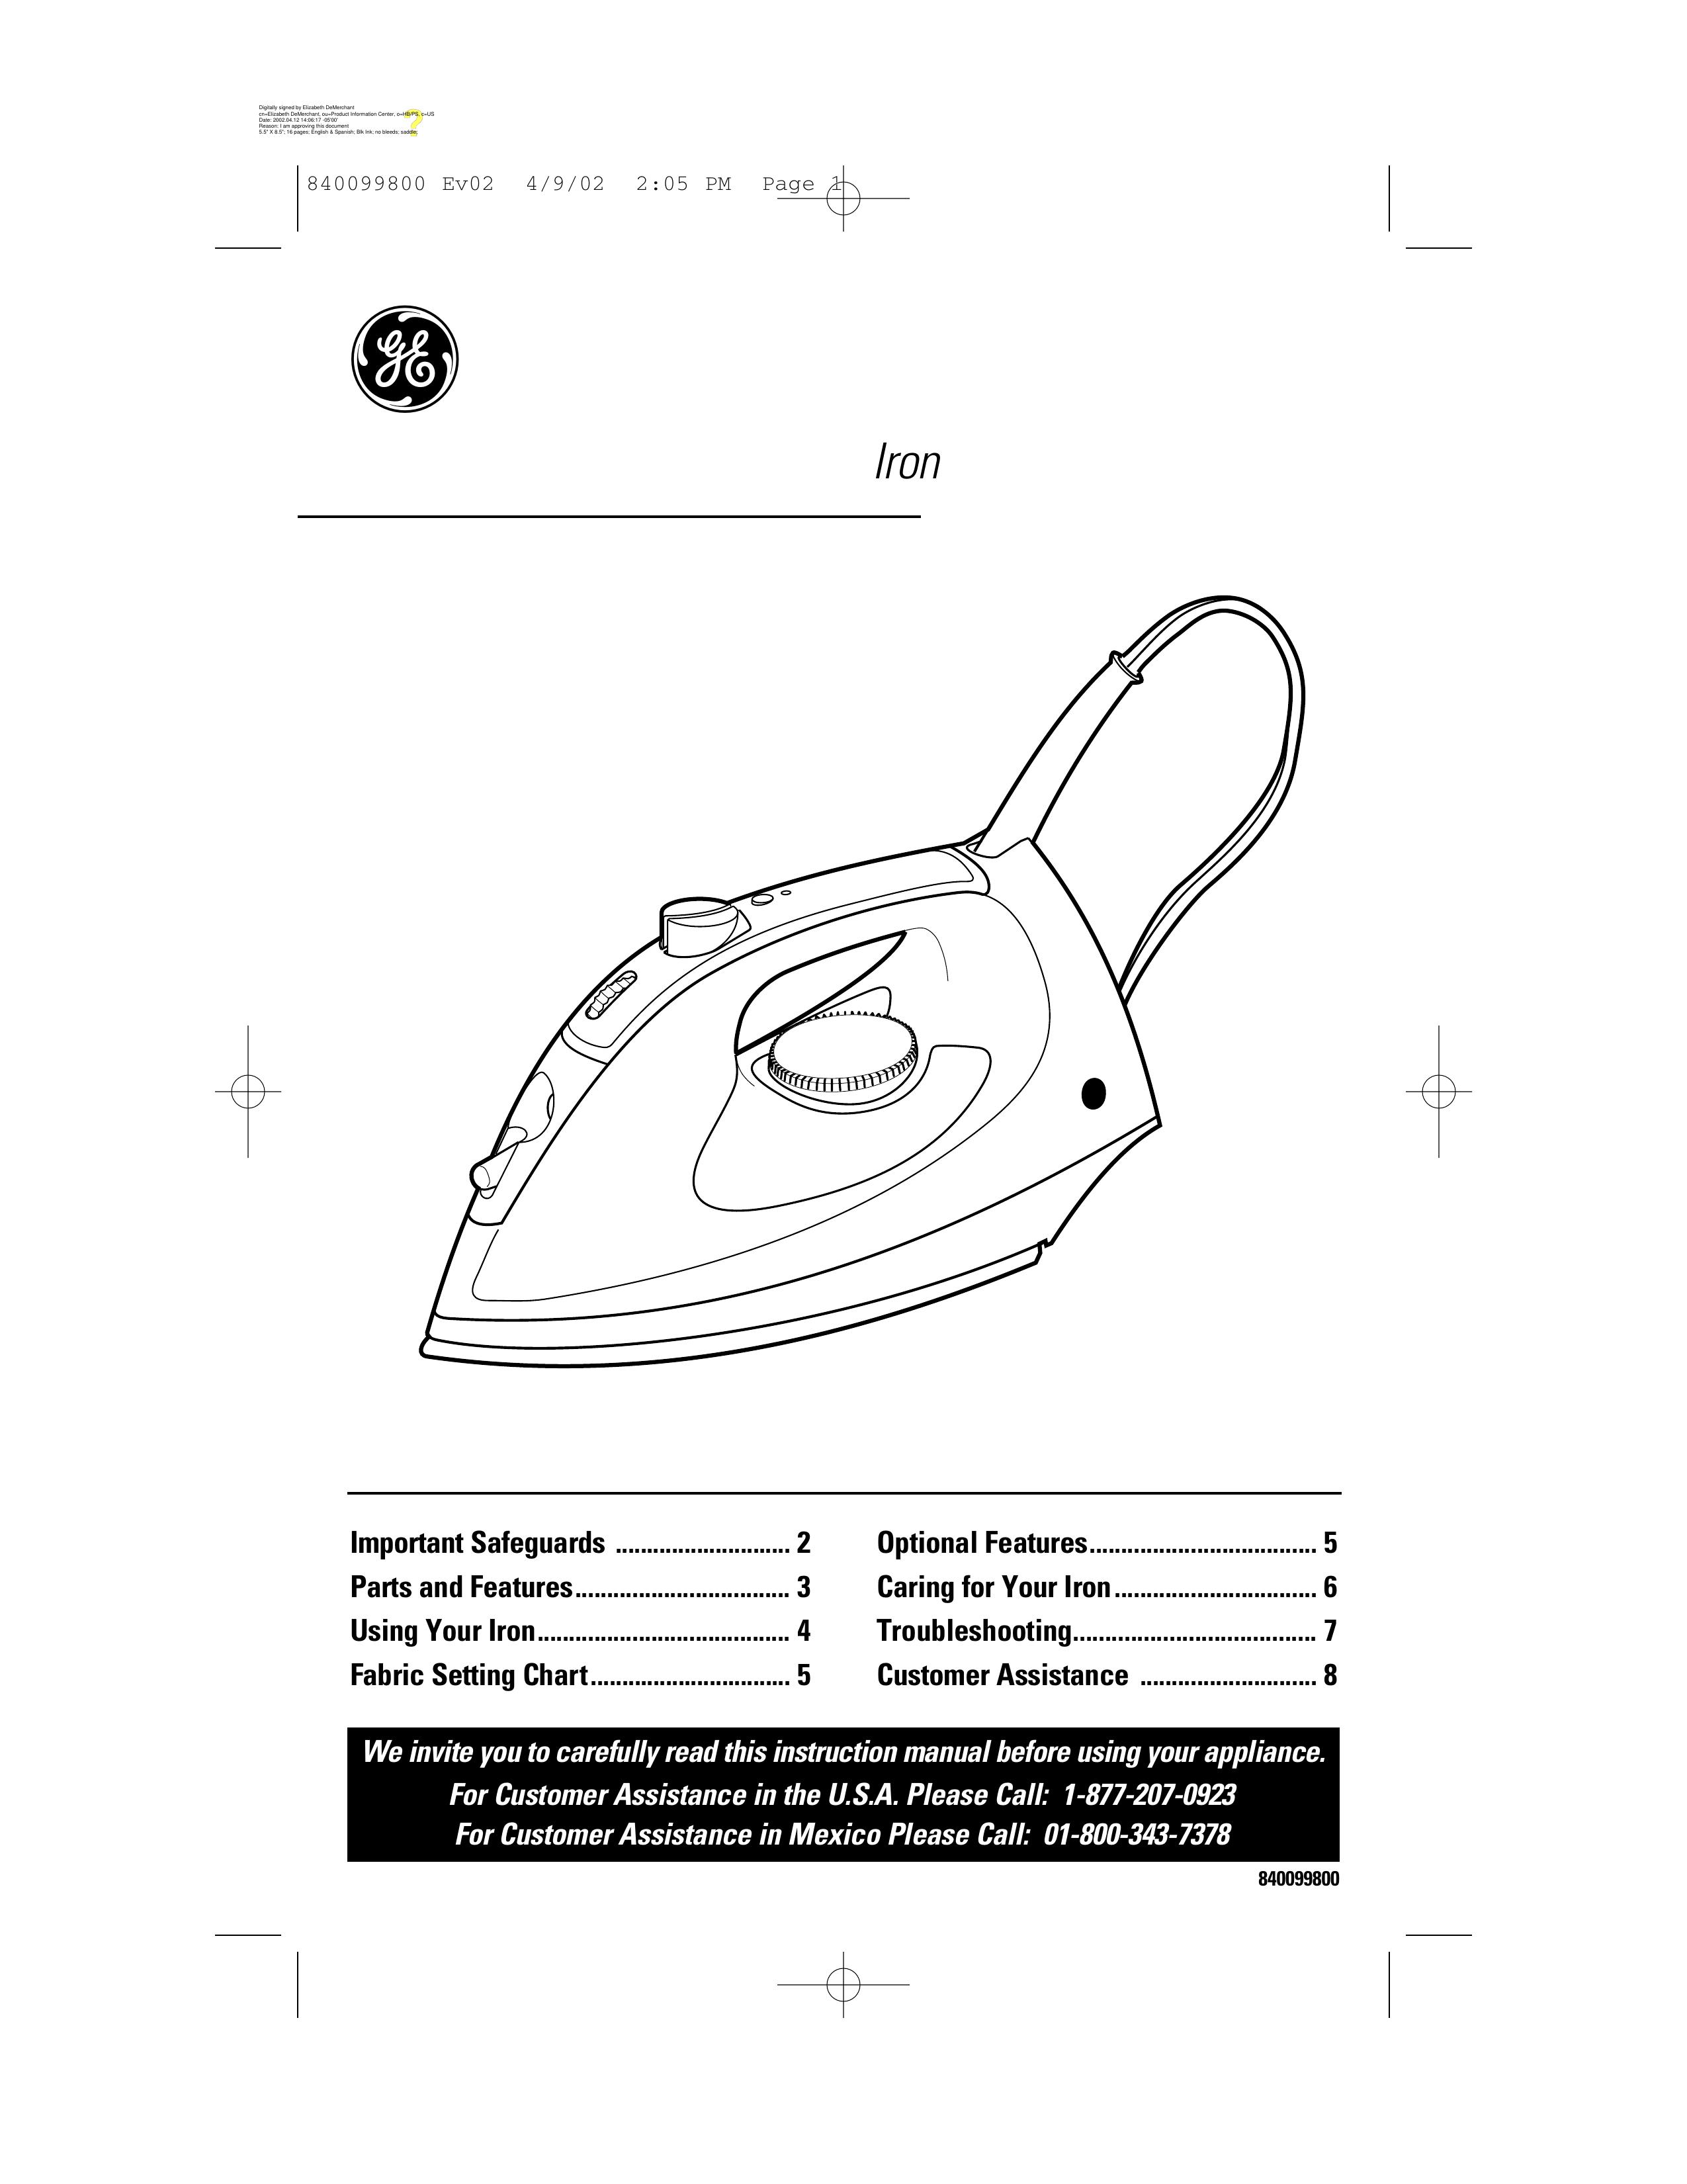 GE 169073 Iron User Manual